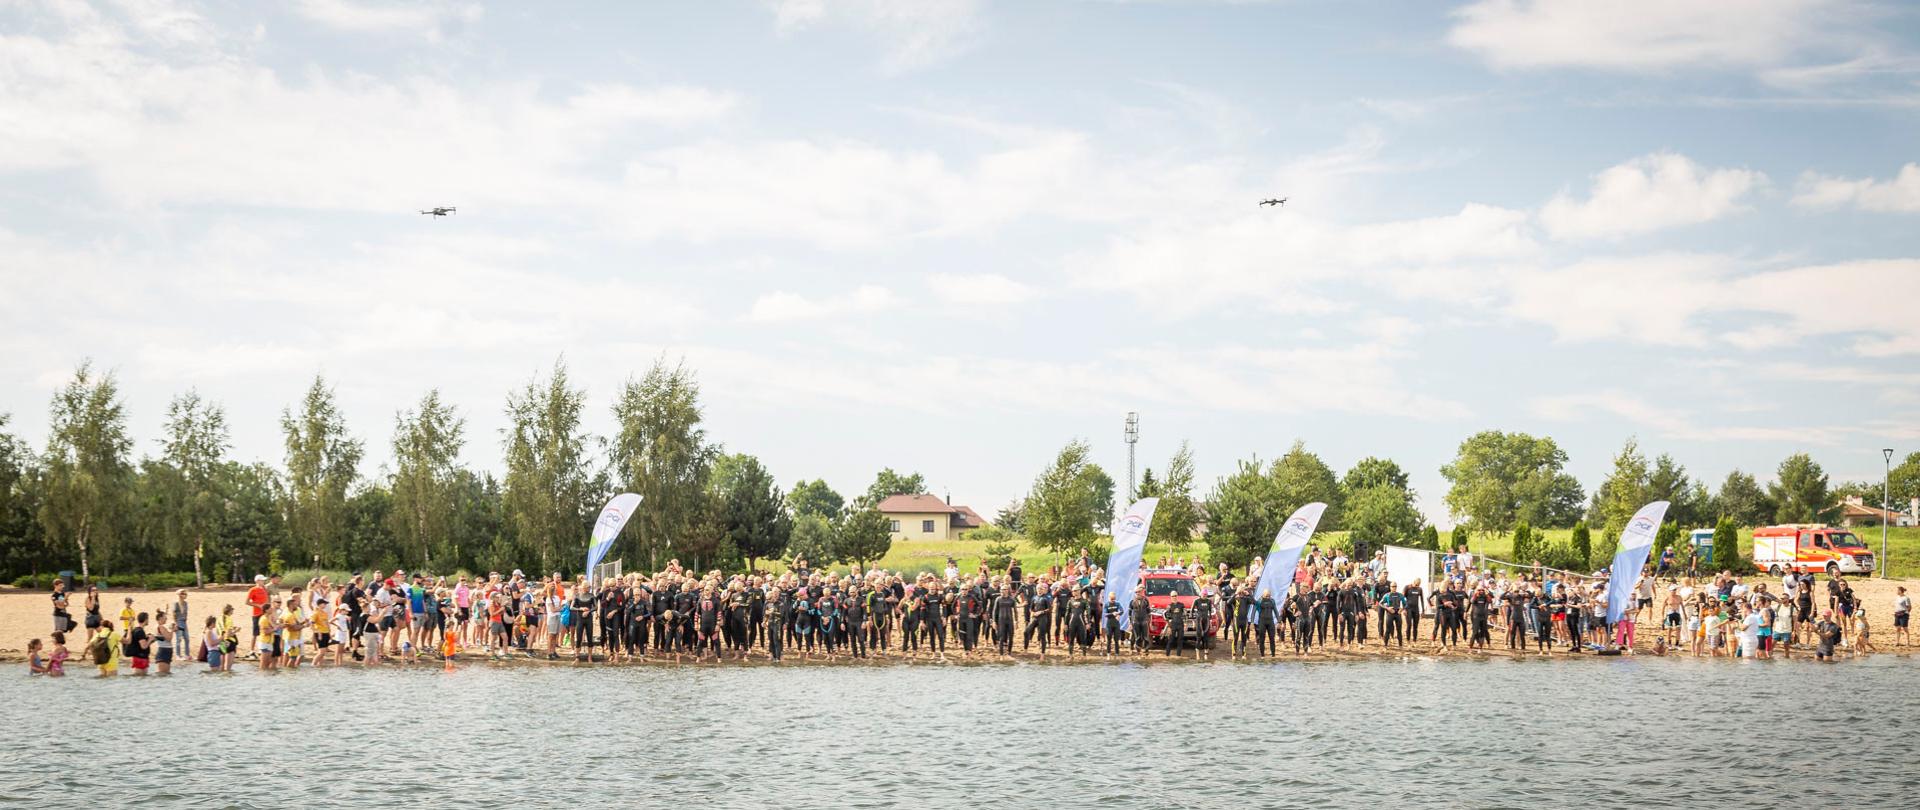 Grupa ubranych w stroje pływackie osób biegnie po plaży w kierunku wody